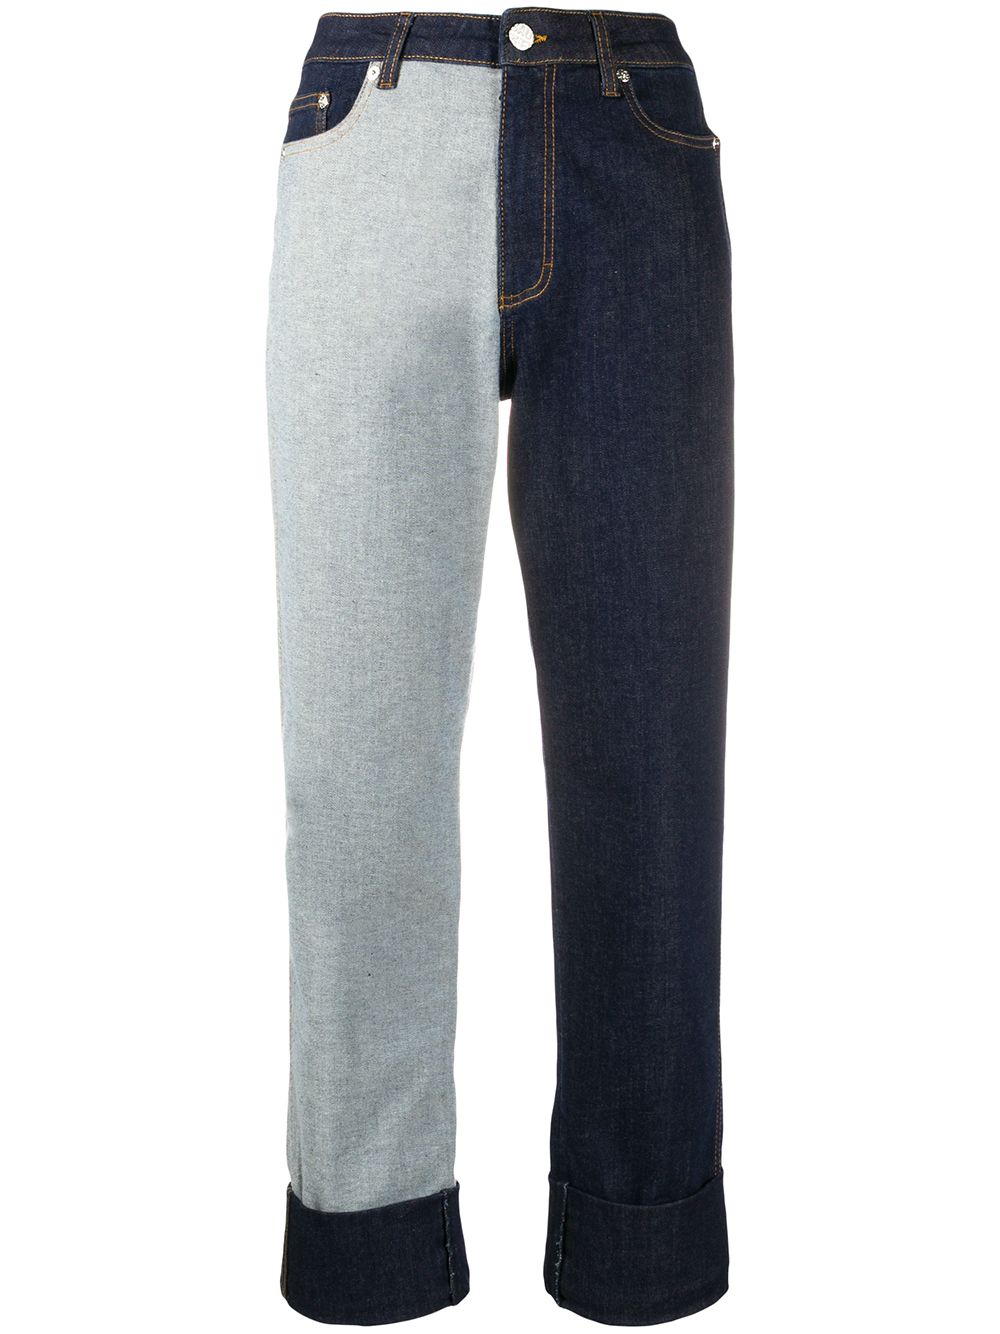 фото Baum und pferdgarten комбинированные джинсы бойфренды